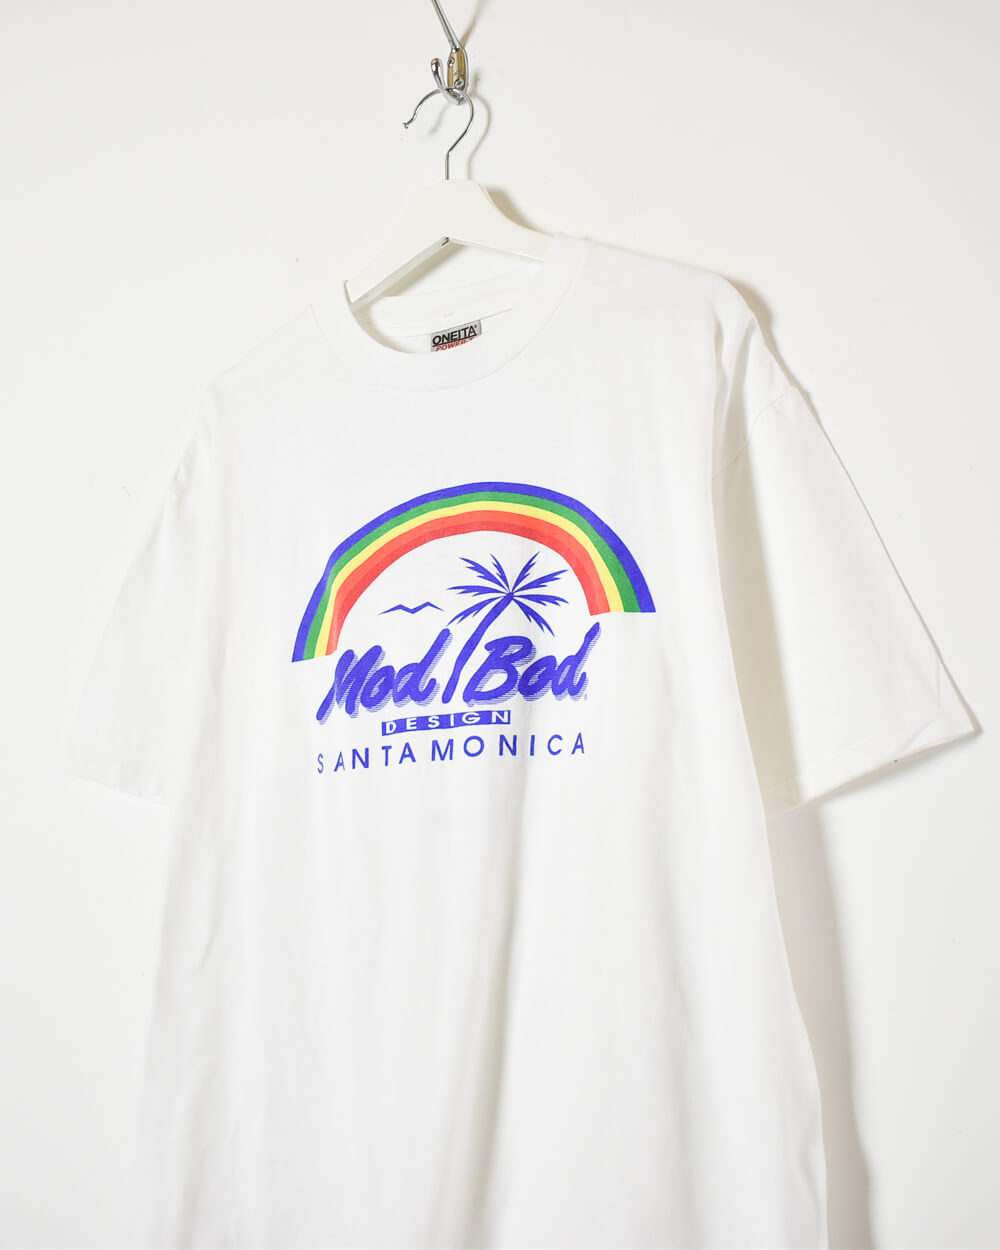 White Mod Bod Santa Monica T-Shirt - X-Large